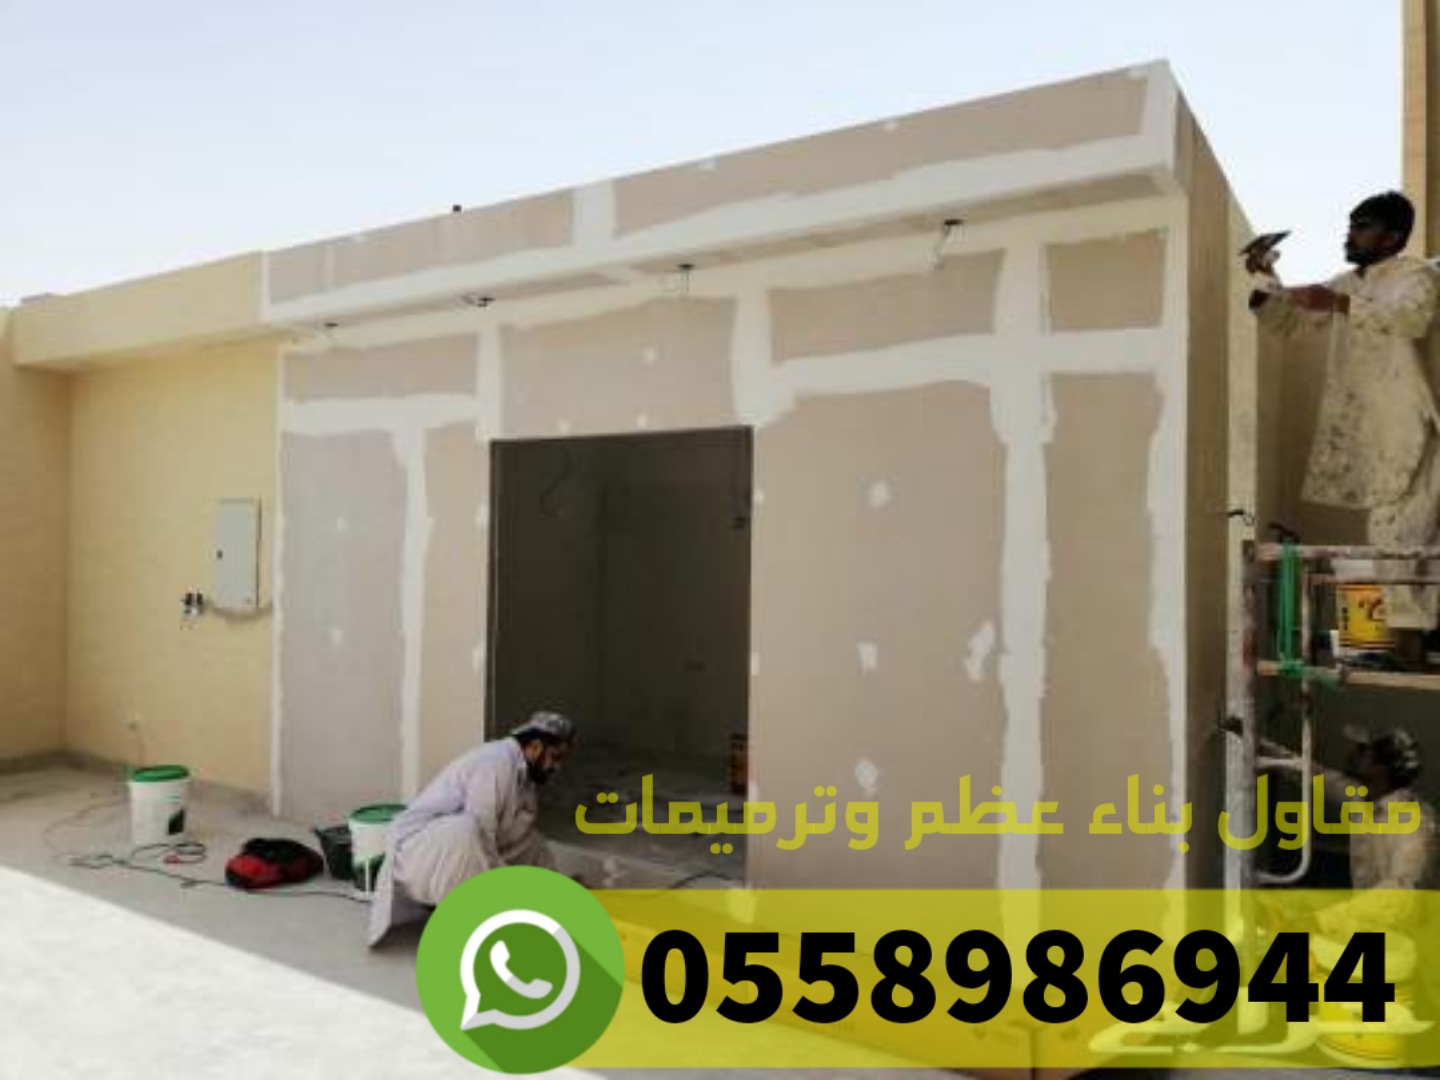 منازل - ترميم منازل و بناء عظم في جدة, 0558986944 P_2486vx6aj4